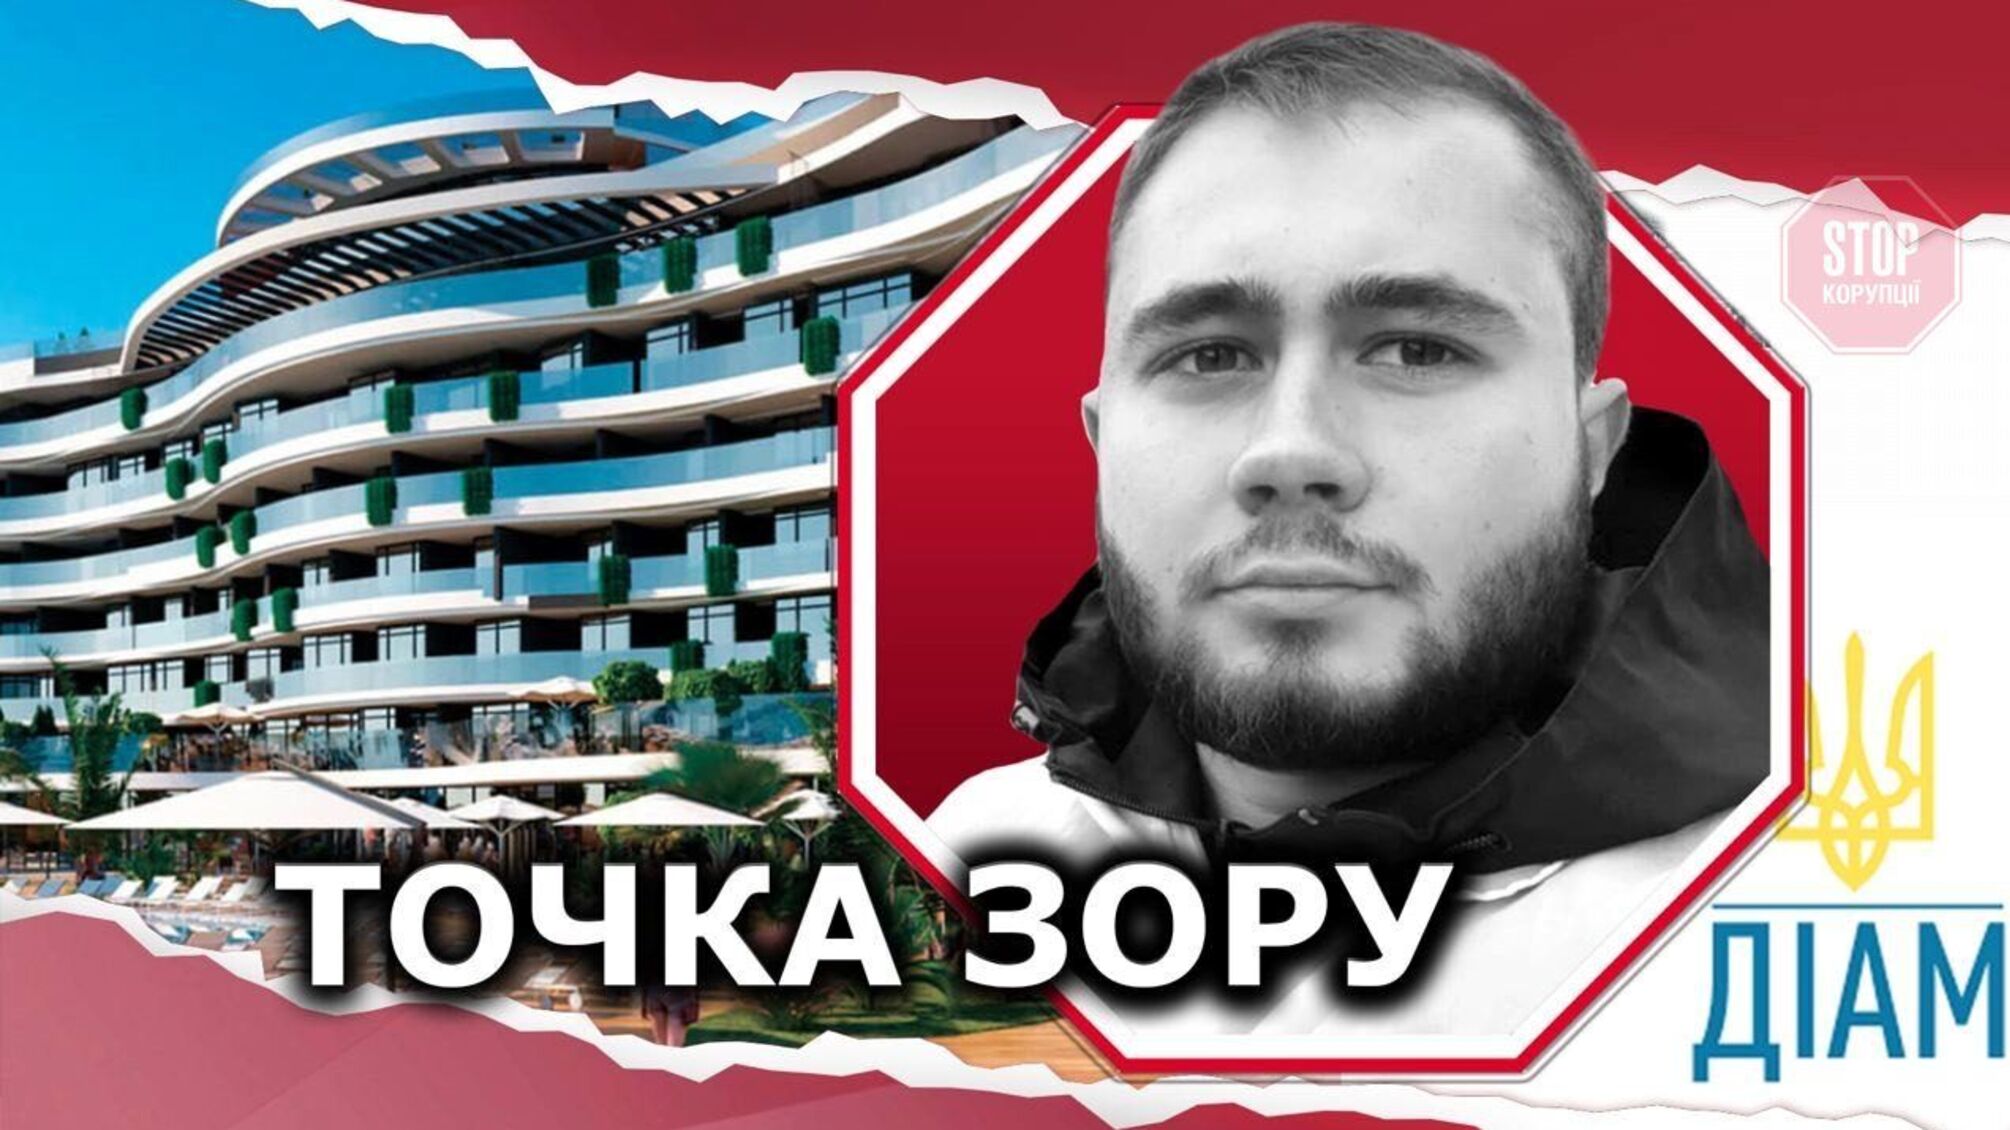 ЖК 'Sky River 2' в Киевской области возводят под видом гостиницы (видео)